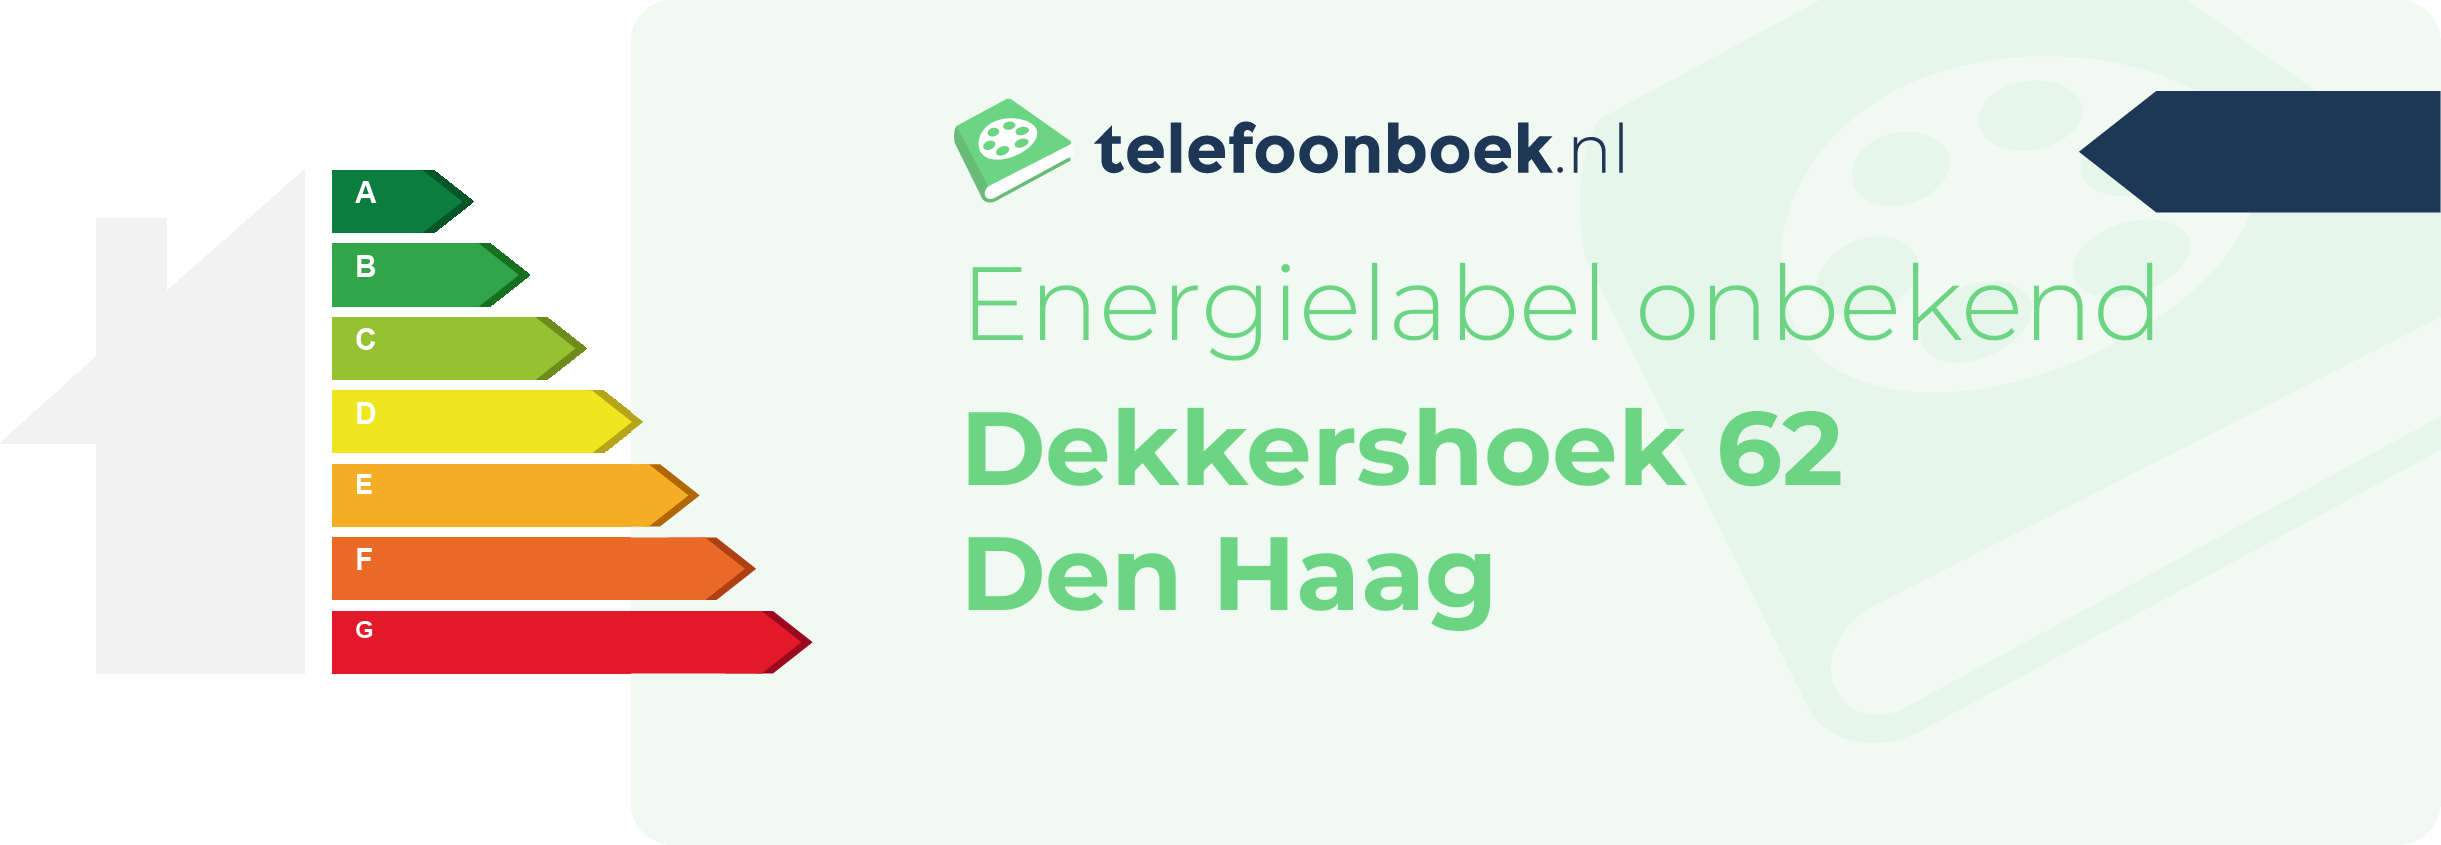 Energielabel Dekkershoek 62 Den Haag